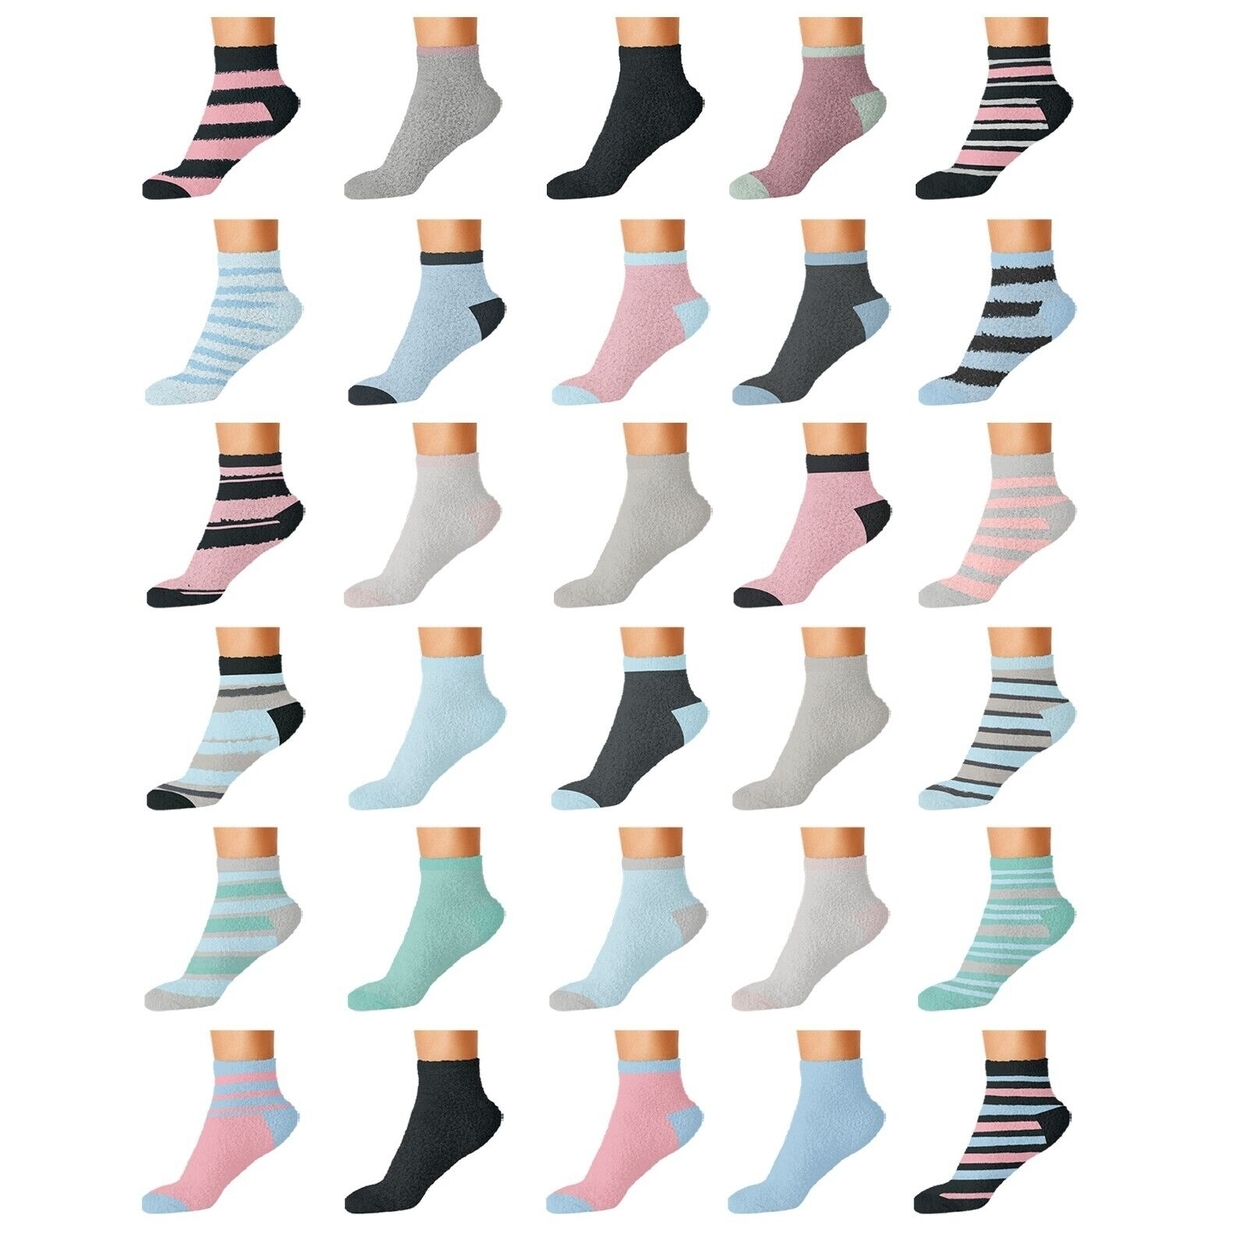 10-Pairs: Women's Cozy Warm Fuzzy Fluffy Crew Socks - Solid & Striped